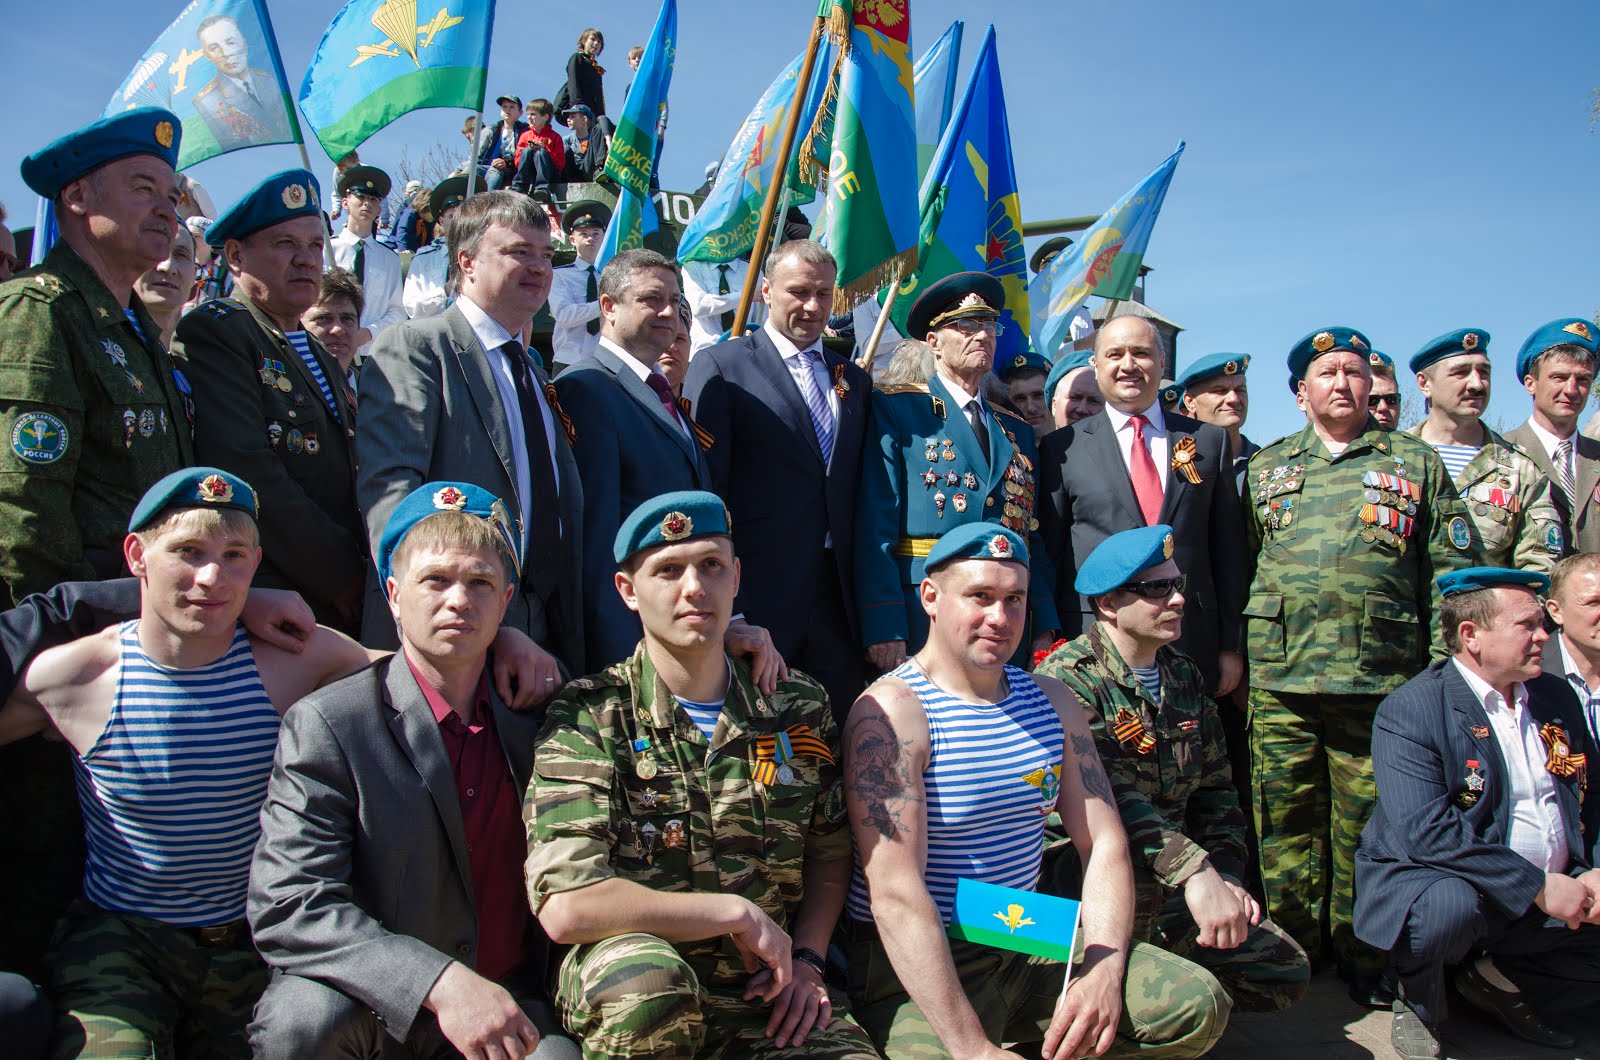 Памятное фото руководителей Областного правительства и властей города с ветеранами десантных войск